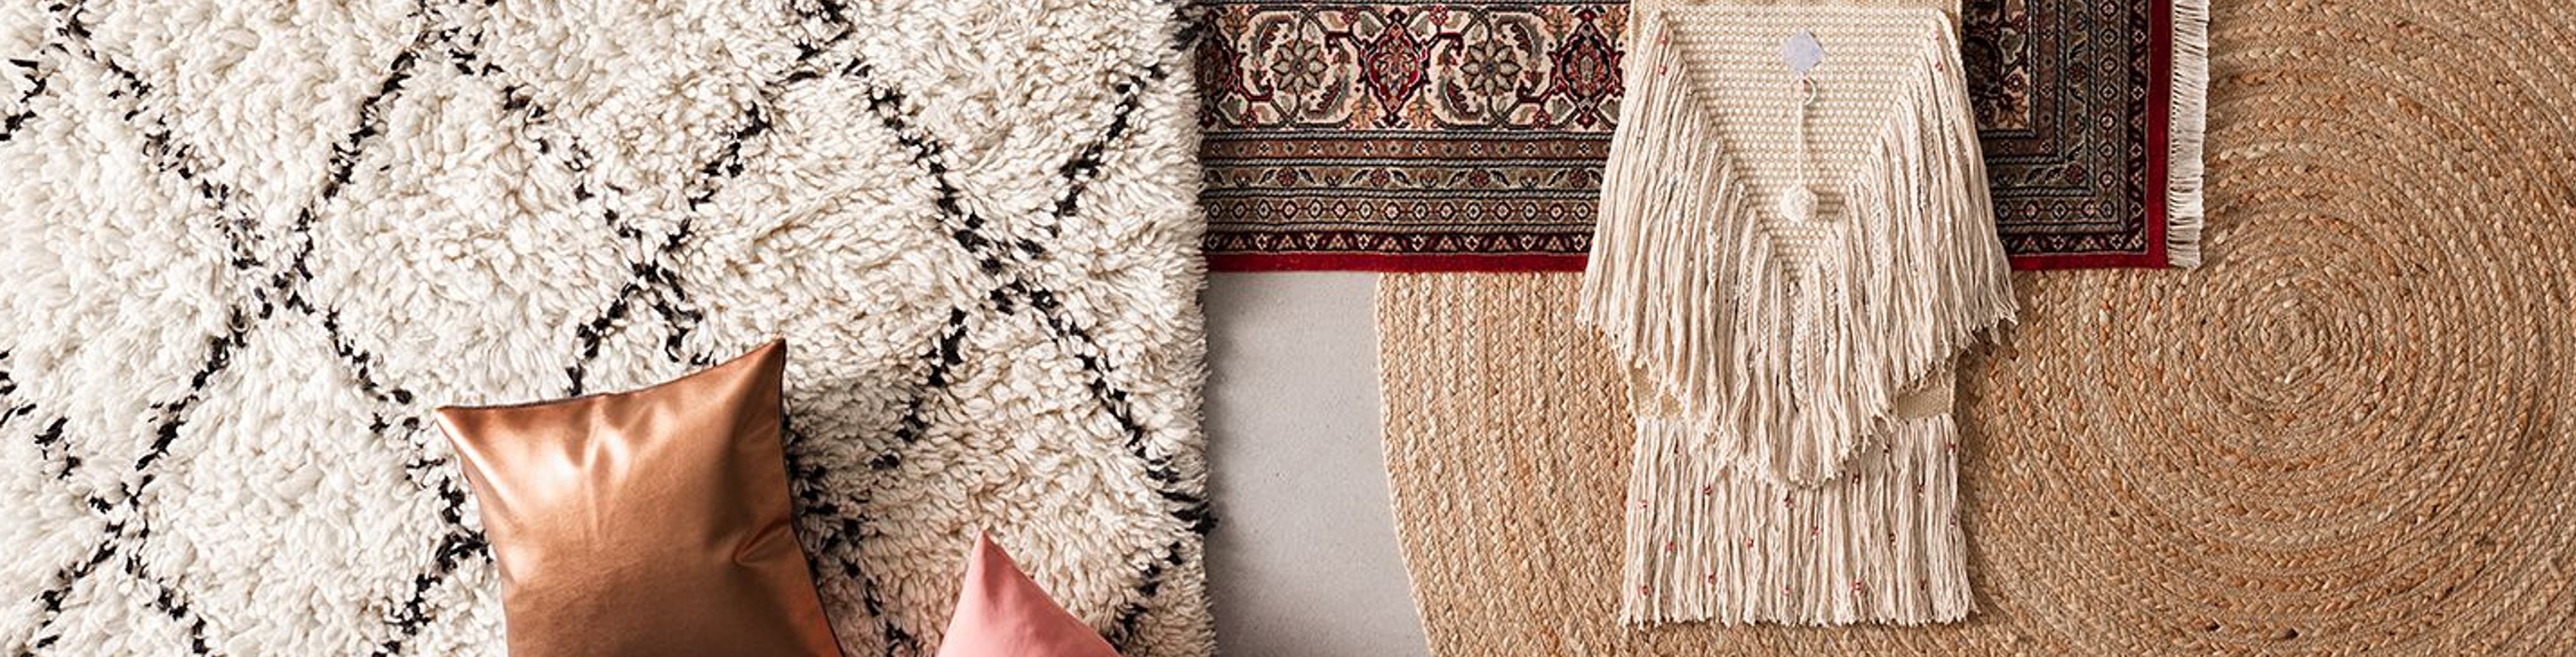 Heller Teppich mit Rautenmuster sowie Juteteppich ausgelegt mit Kissen und Boho-Deko